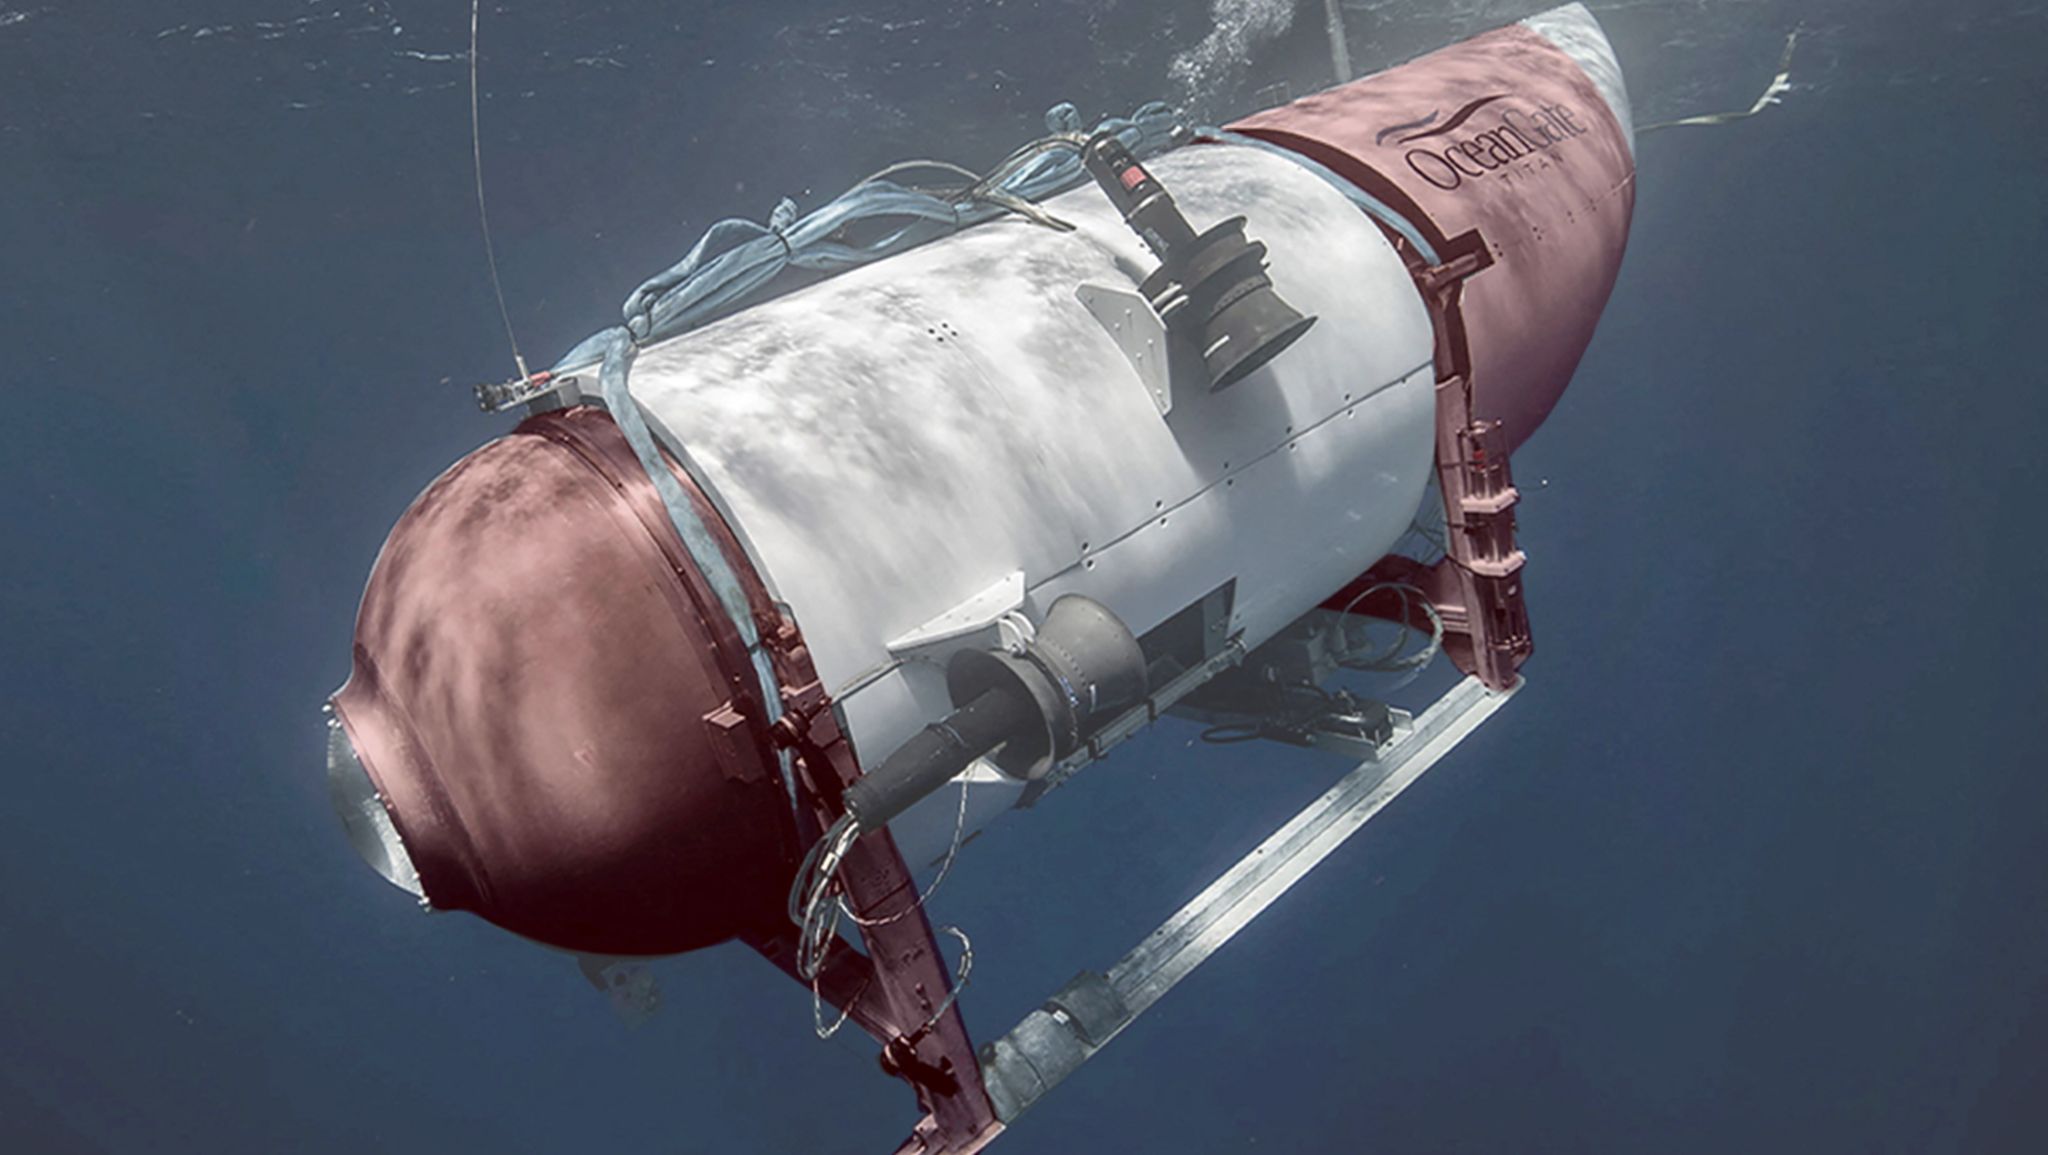 Изображение субмарины «Титан» с выделением опознаваемых частей, которые были найдены среди обломков